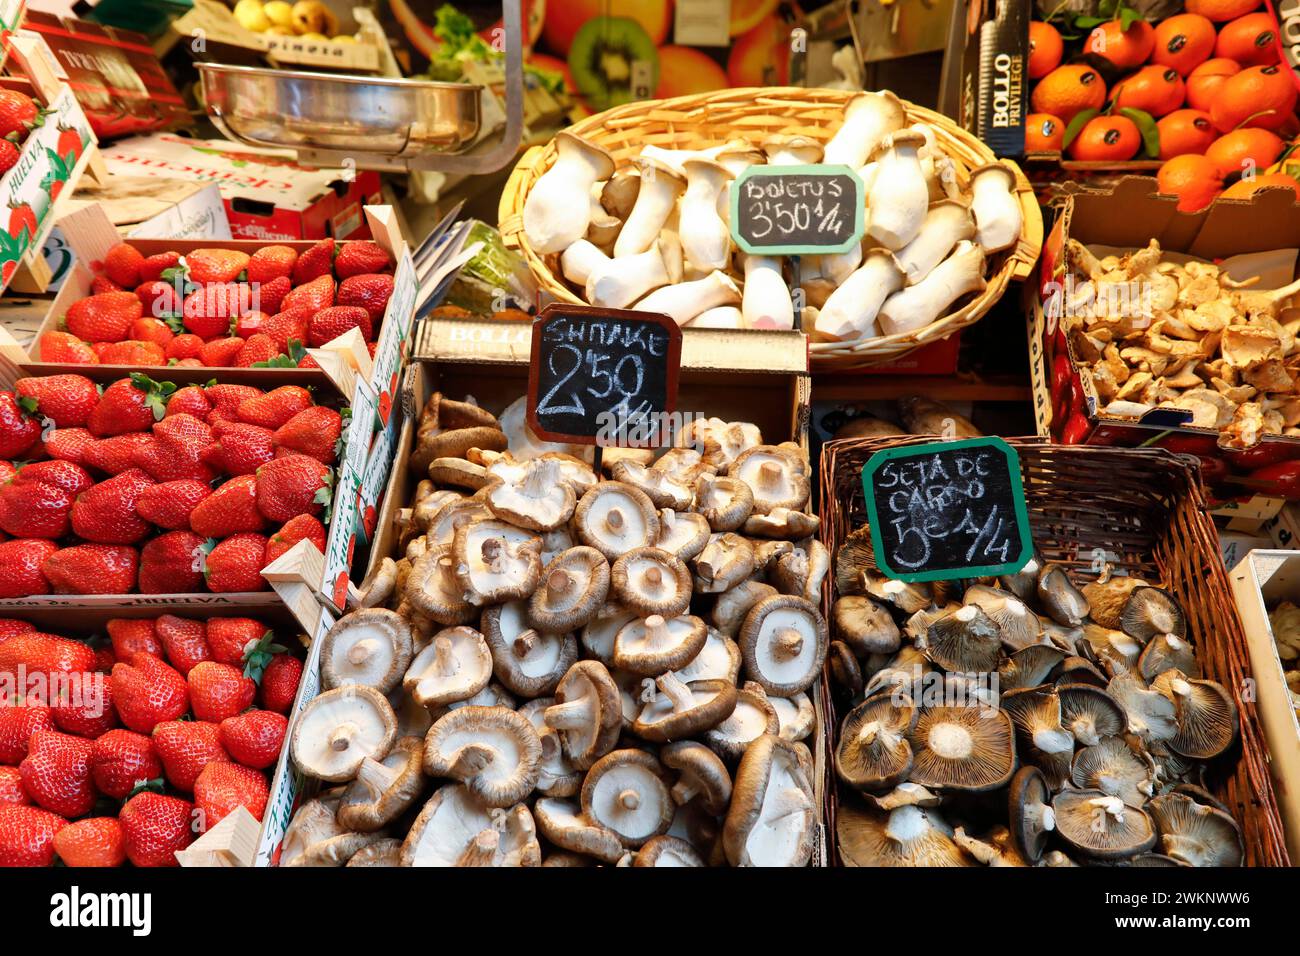 Fruits et champignons espagnols frais au marché aux légumes de Malaga, 12/02/2019 Banque D'Images